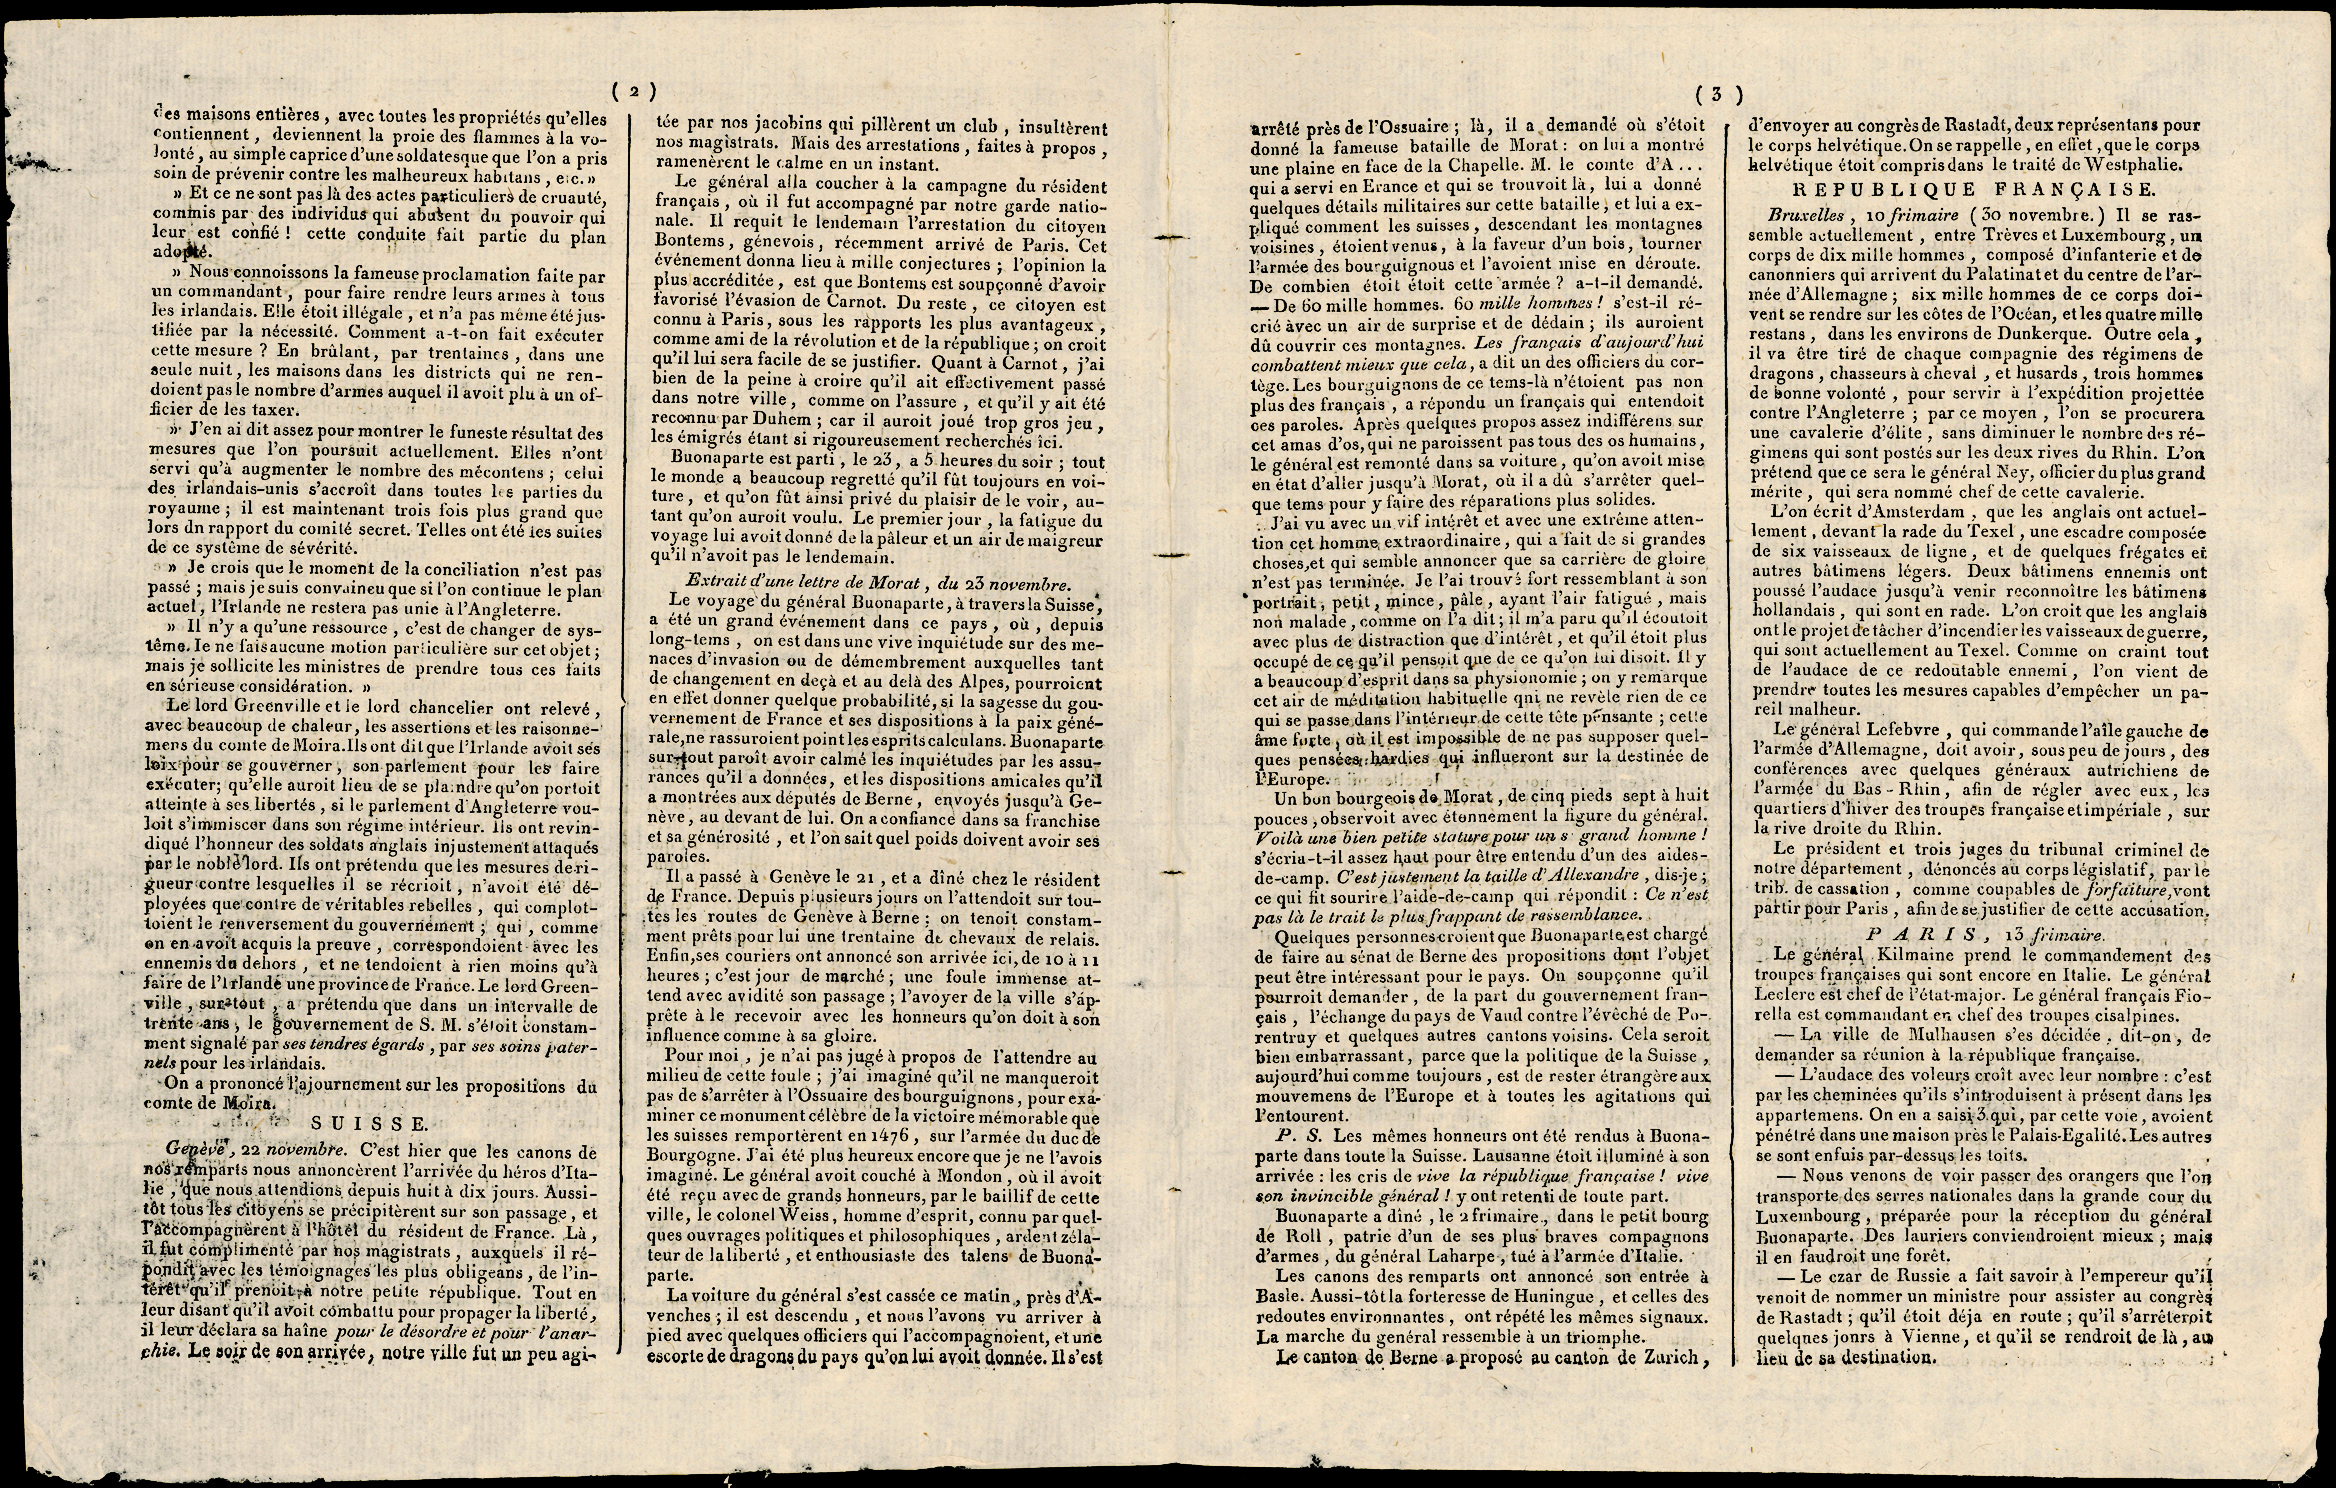 Referenz: annales-politiques-napoleon-bonapartes-reise-durch-die-schweiz-november-1797